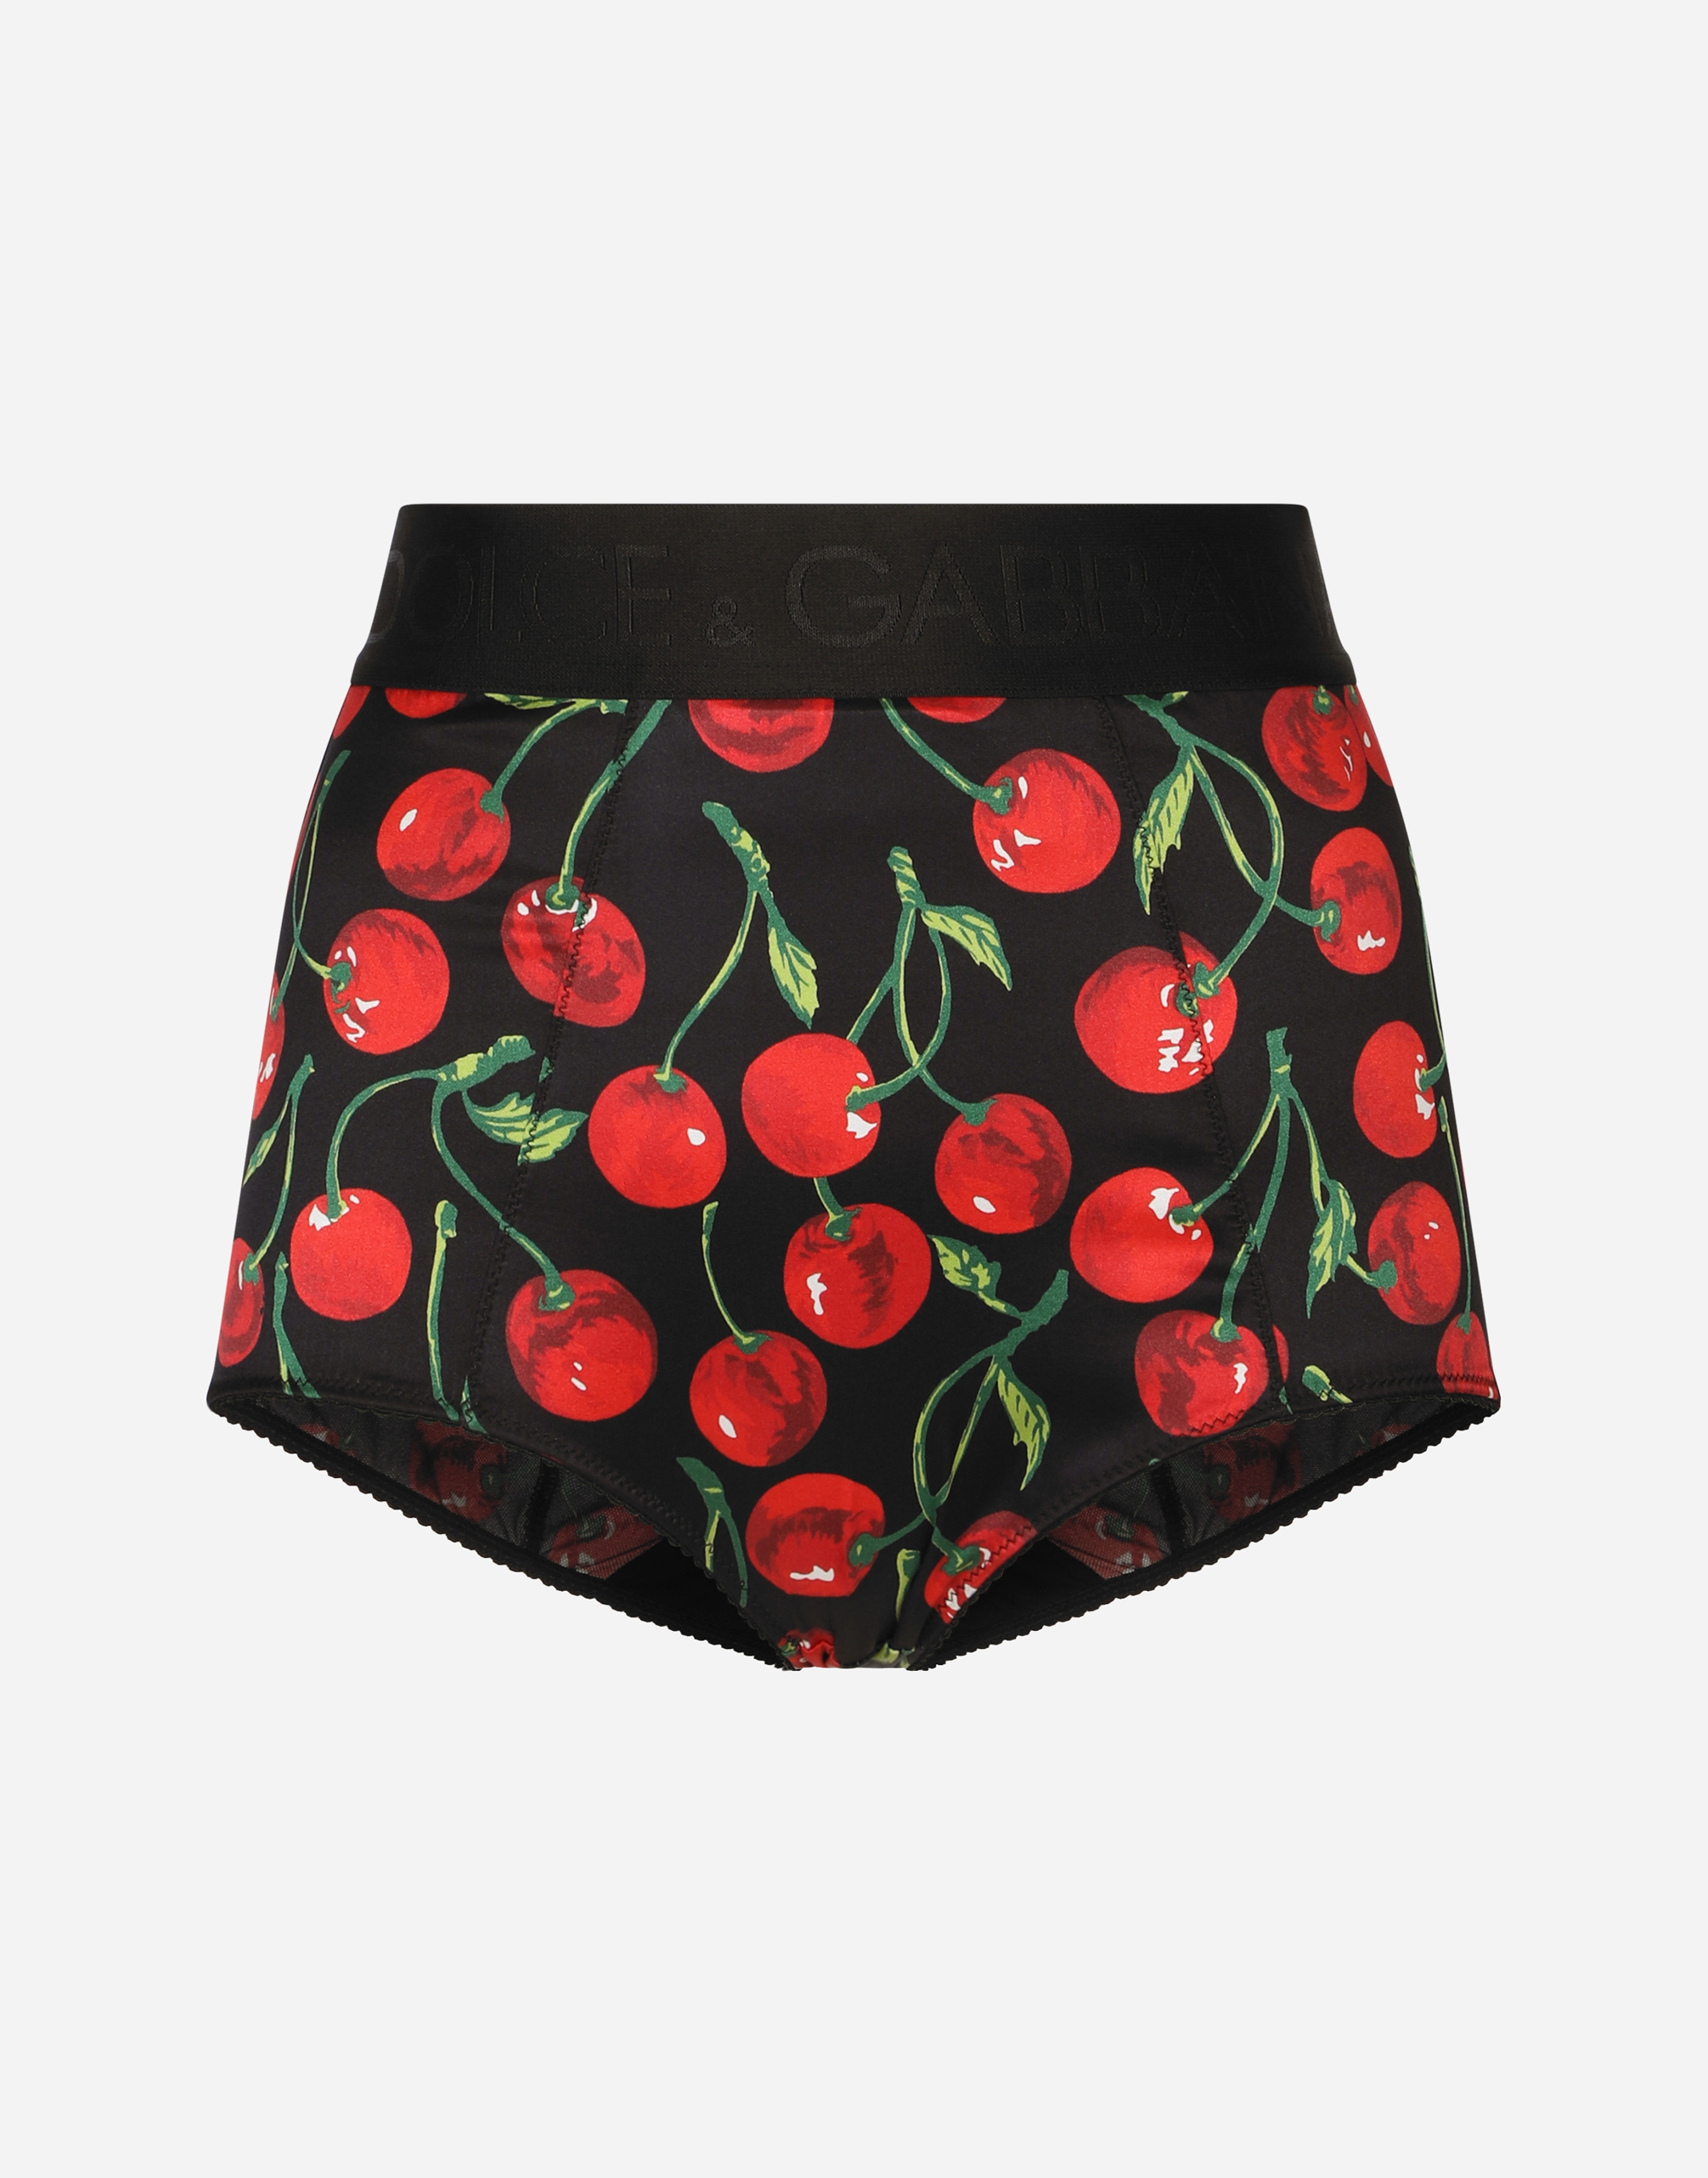 Cherry-print satin high-waisted panties